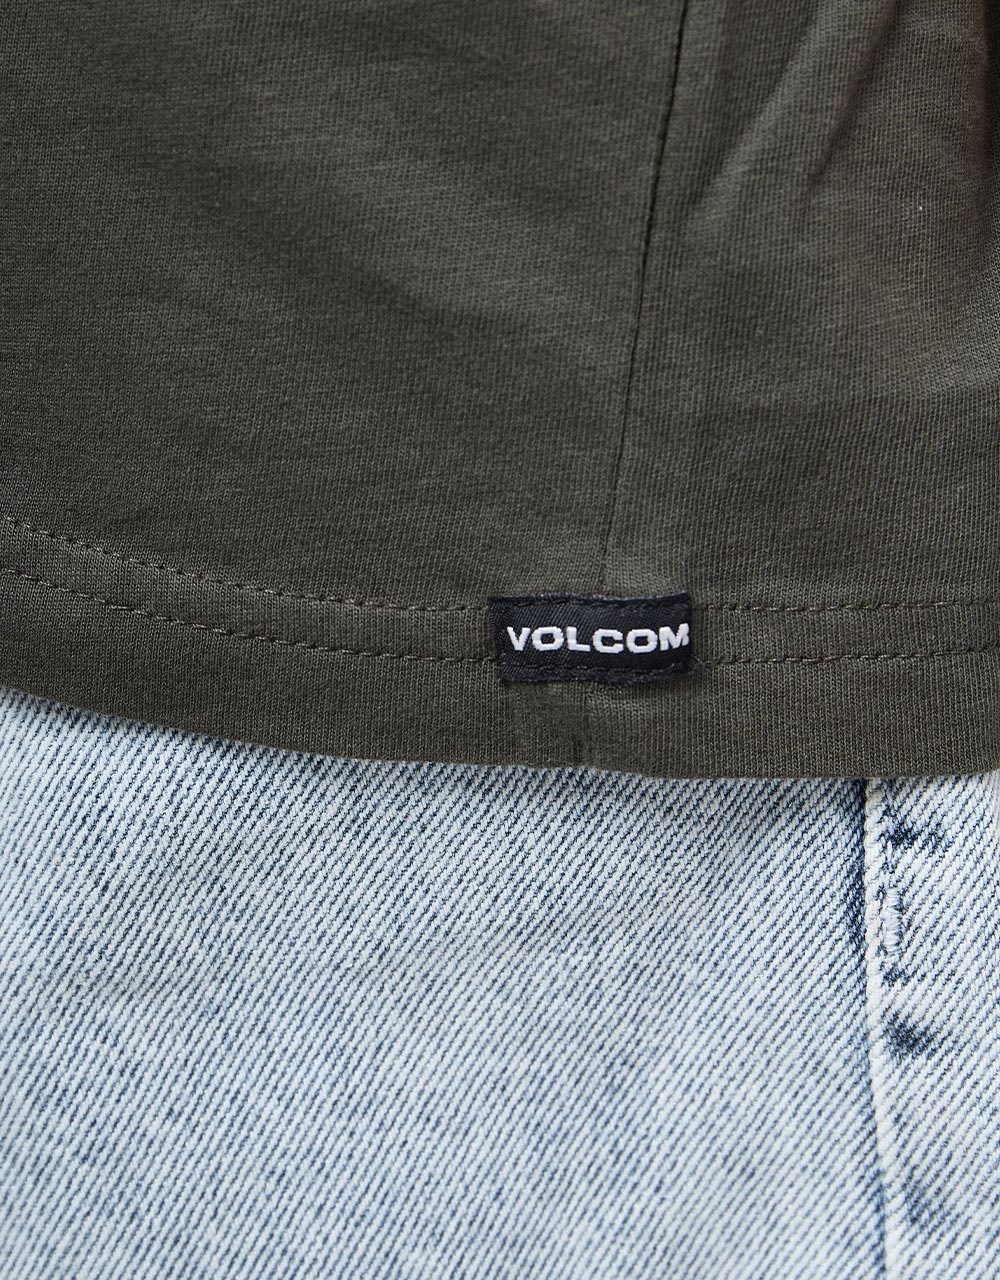 Volcom Gardener T-Shirt - Rinsed Black